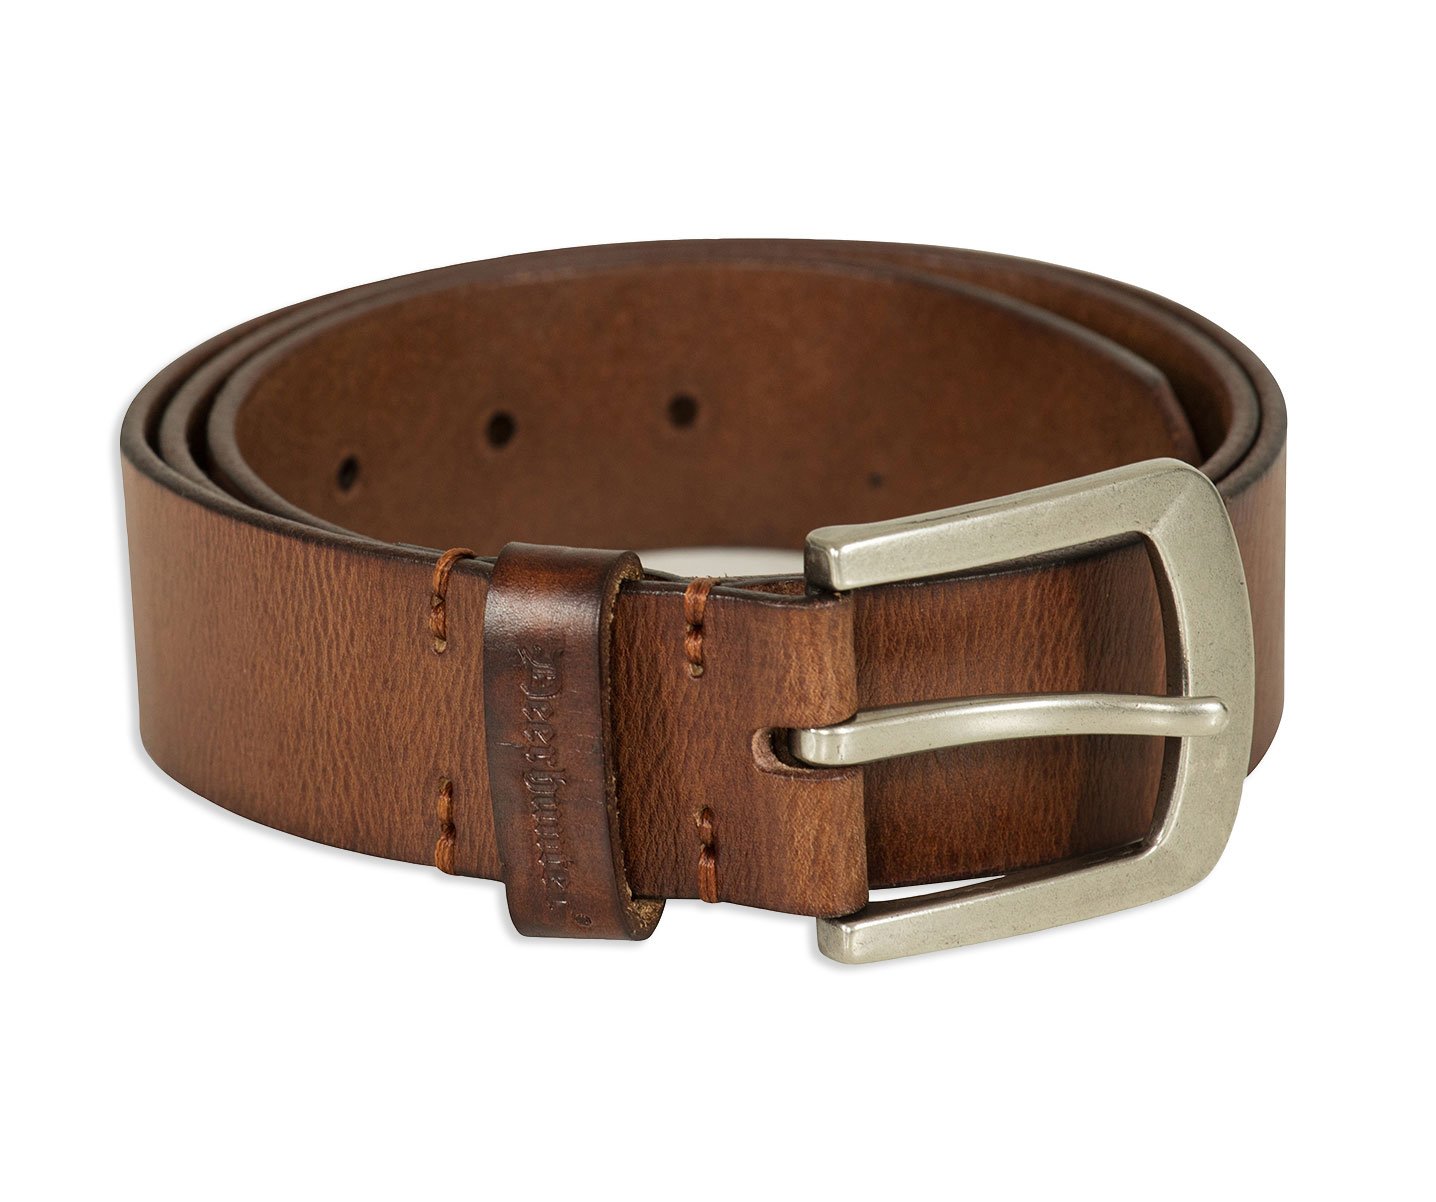 Rich Brown 4 cm Width Leather Belt by Deerhunter 